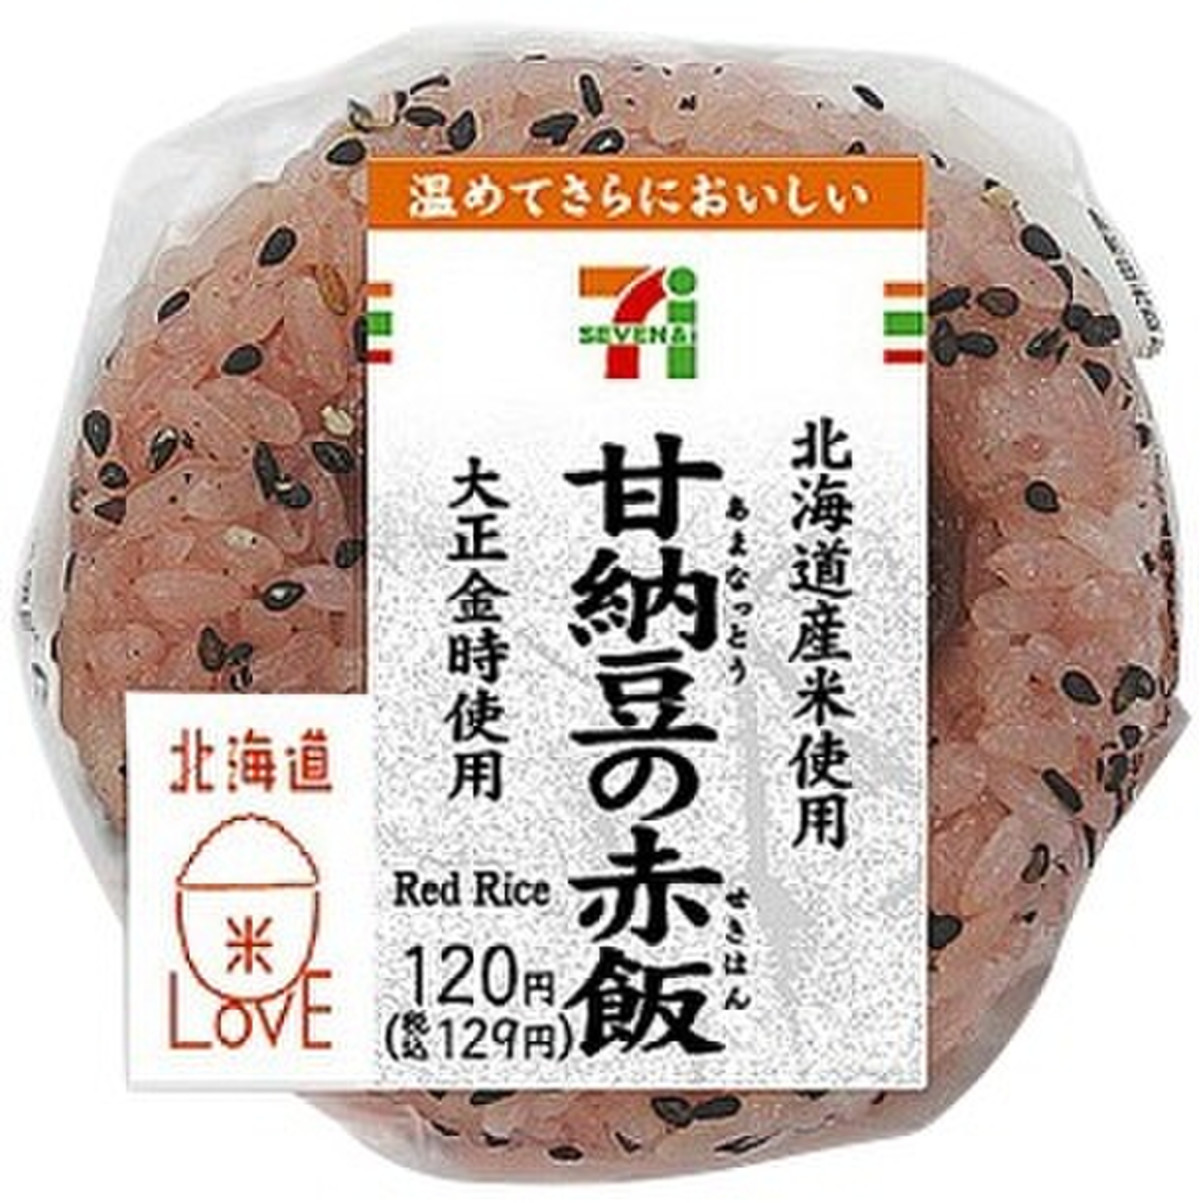 セブン イレブン ふっくら仕上げた赤飯おむすび 甘納豆使用 北海道で